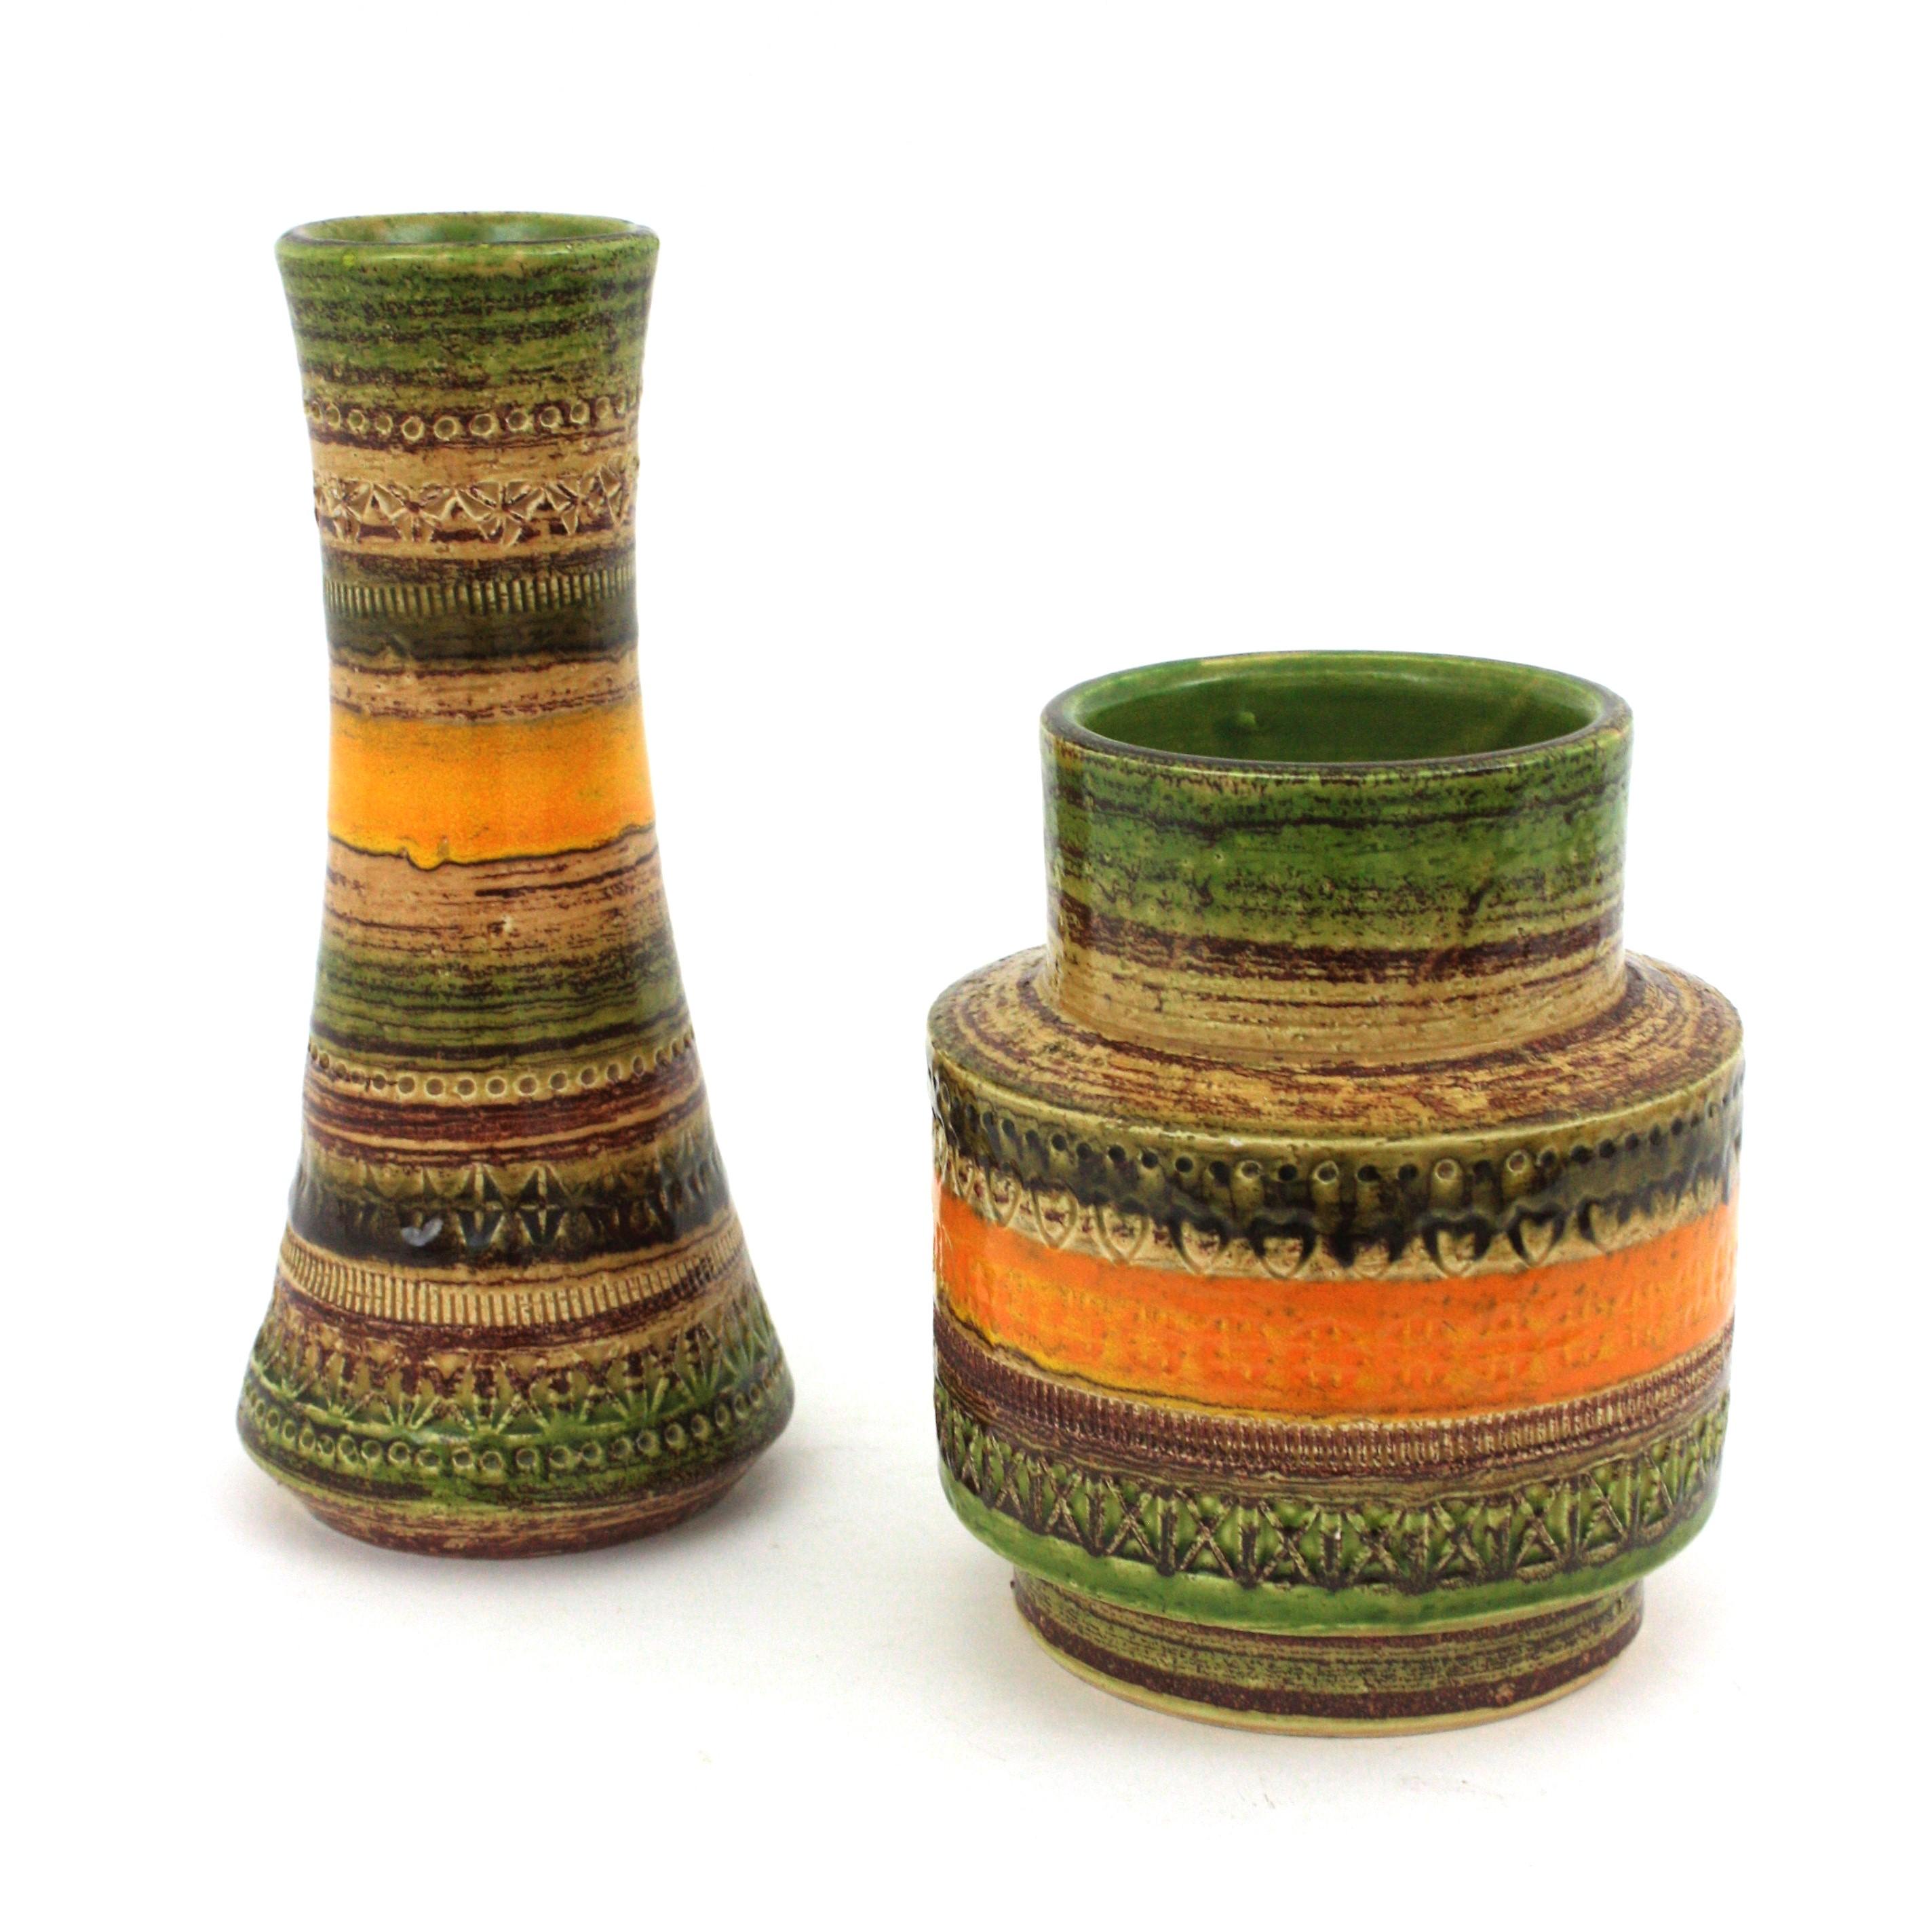 Satz von zwei Keramikvasen der Serie Bitossi Aldo Londi für Cer Paoli Sahara. Italien, 1960er Jahre.
Ceramiche Paoli 